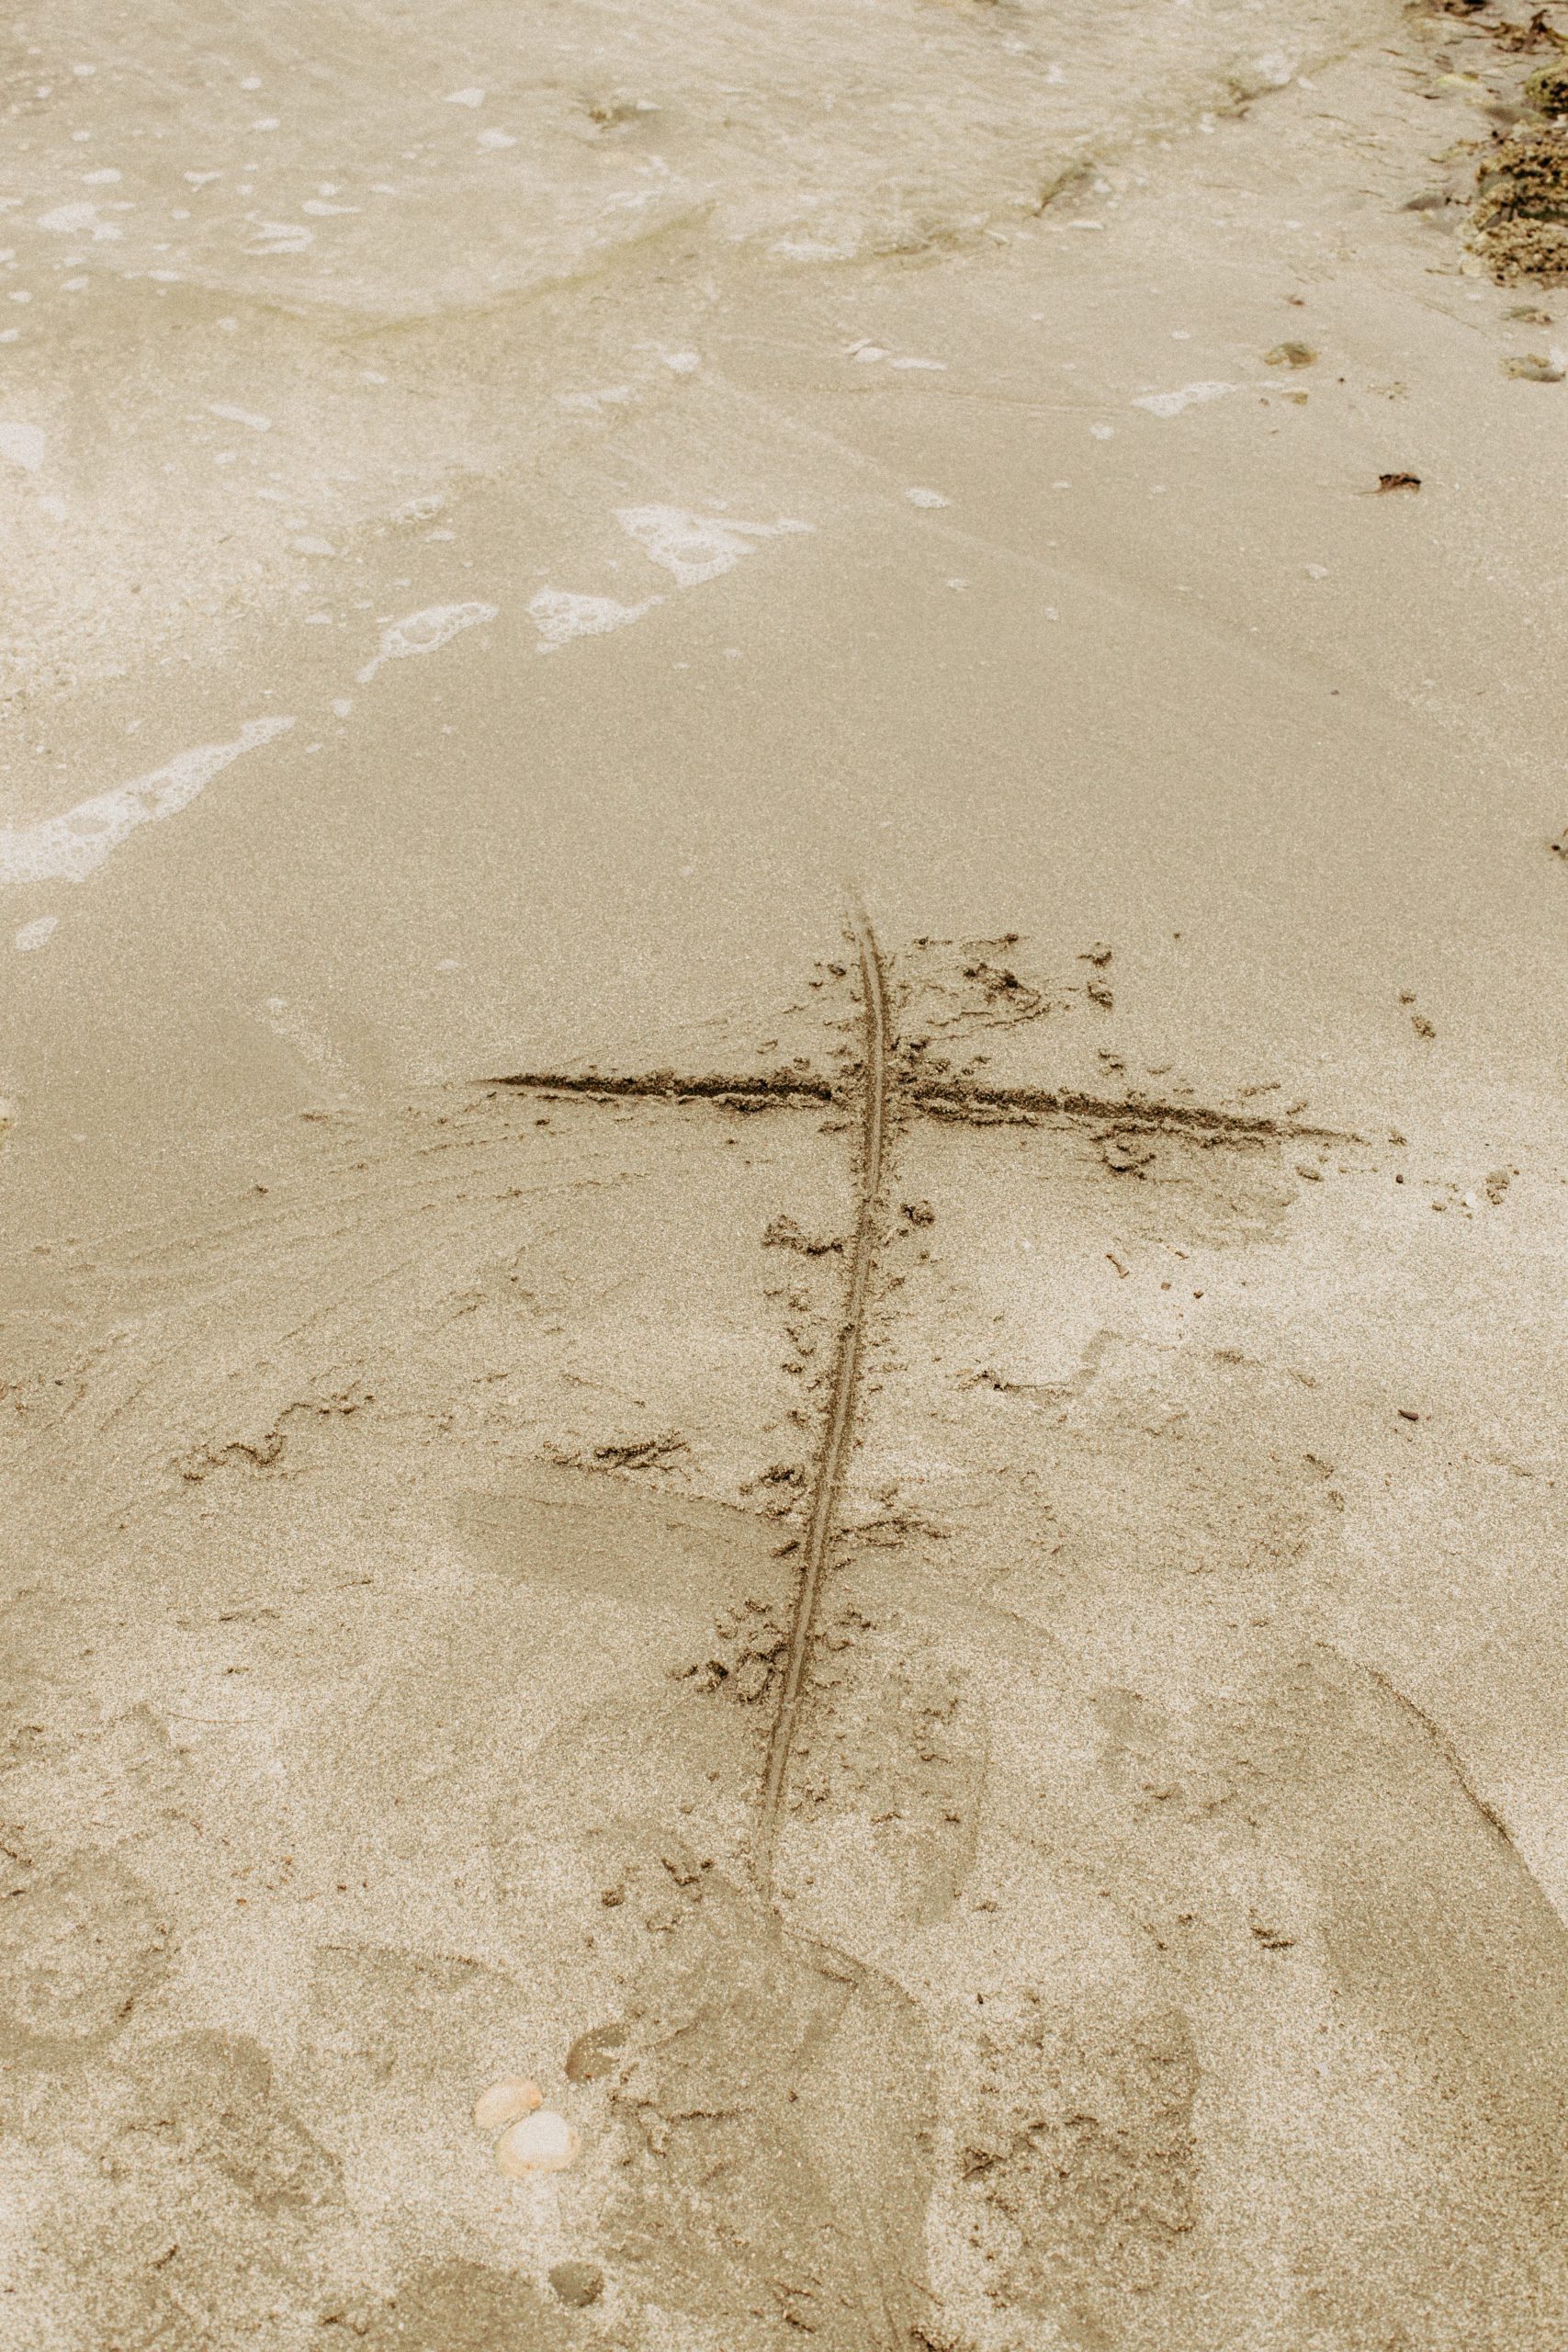 Cross on sandy beach